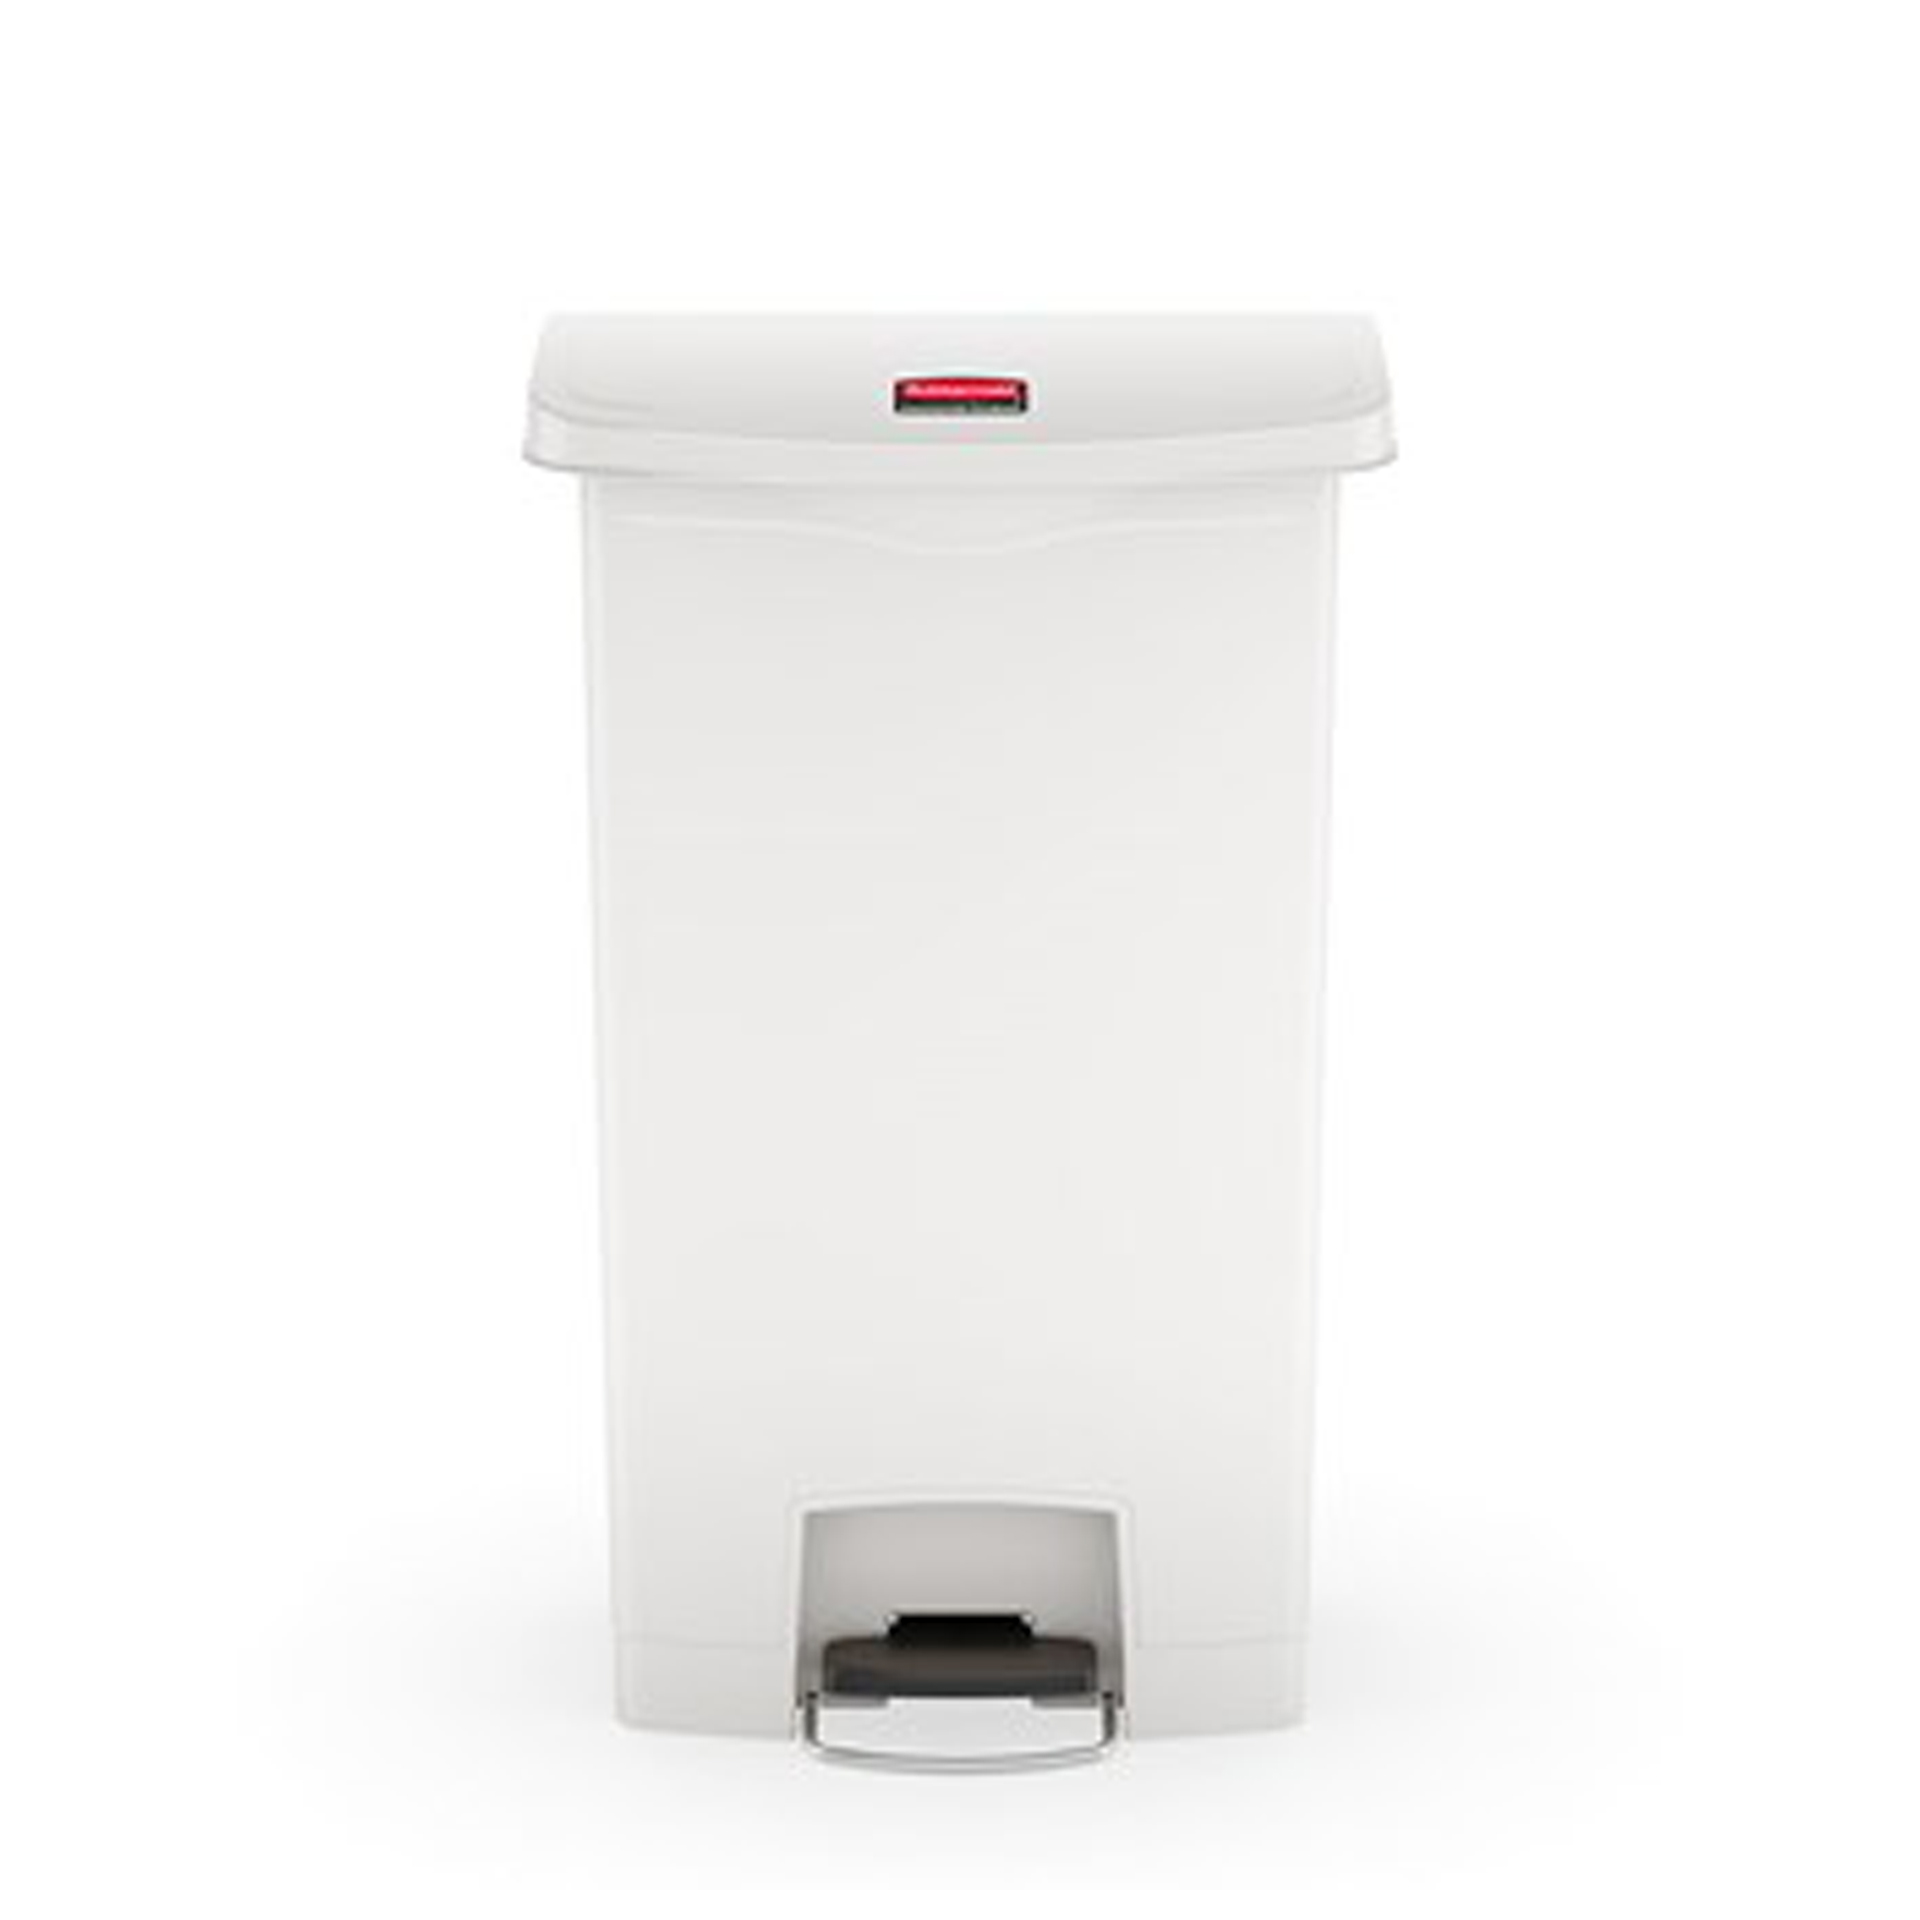 ถังขยะแบบเท้าเหยียบ Slim Jim® Step-On Container ขนาด 90 ลิตร สีขาว